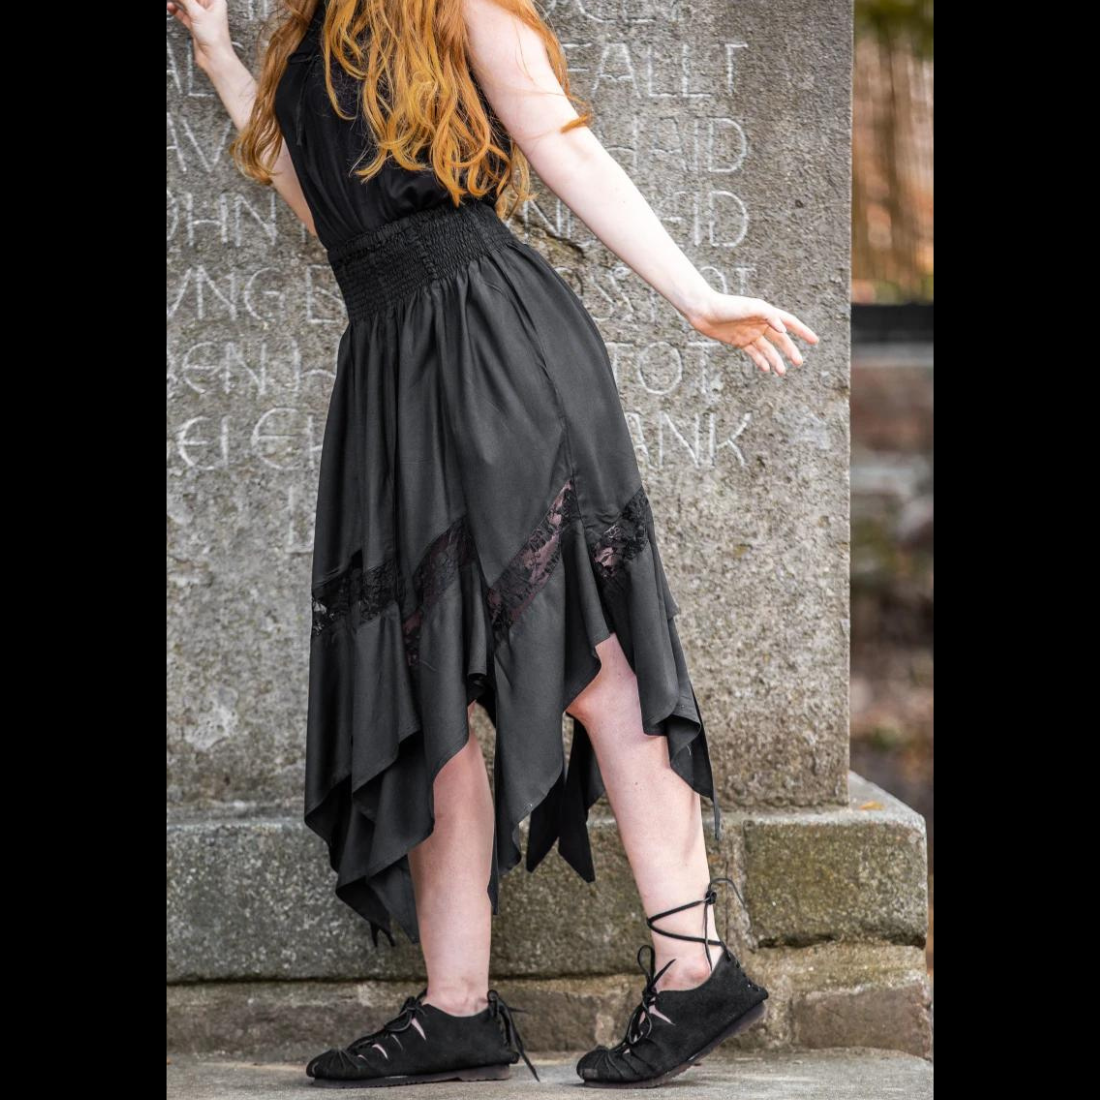 Black Renaissance Skirt with Elastic Waist | Lace Detailing